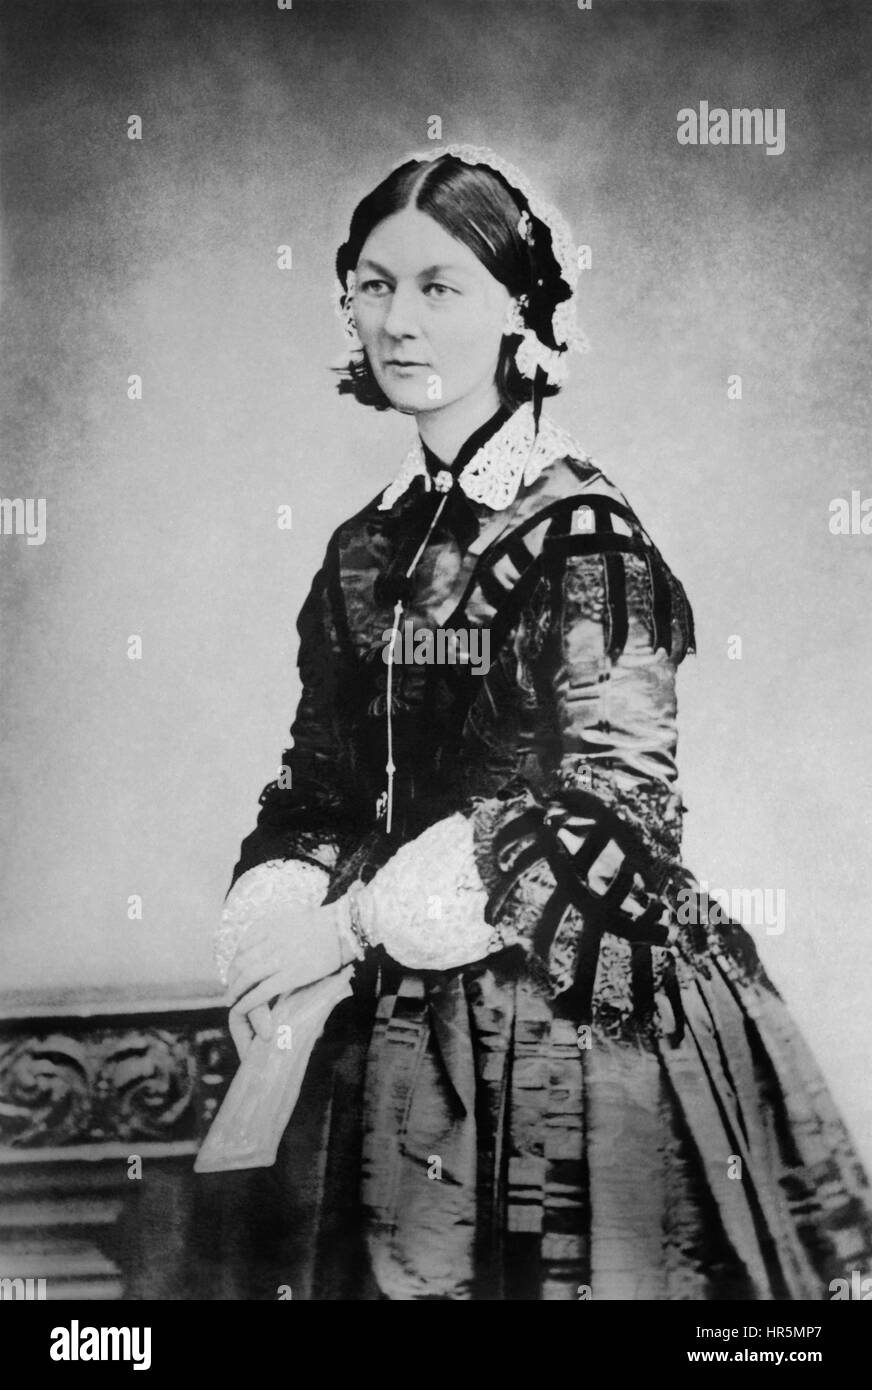 Florence Nightingale (1820-1910), le fondateur des soins infirmiers  modernes, dans un c1856 Photographie par William Edward Kilburn.  Nightingale a dirigé une équipe d'infirmières qu'elle a formés pour s'occuper  de la Britannique blessé